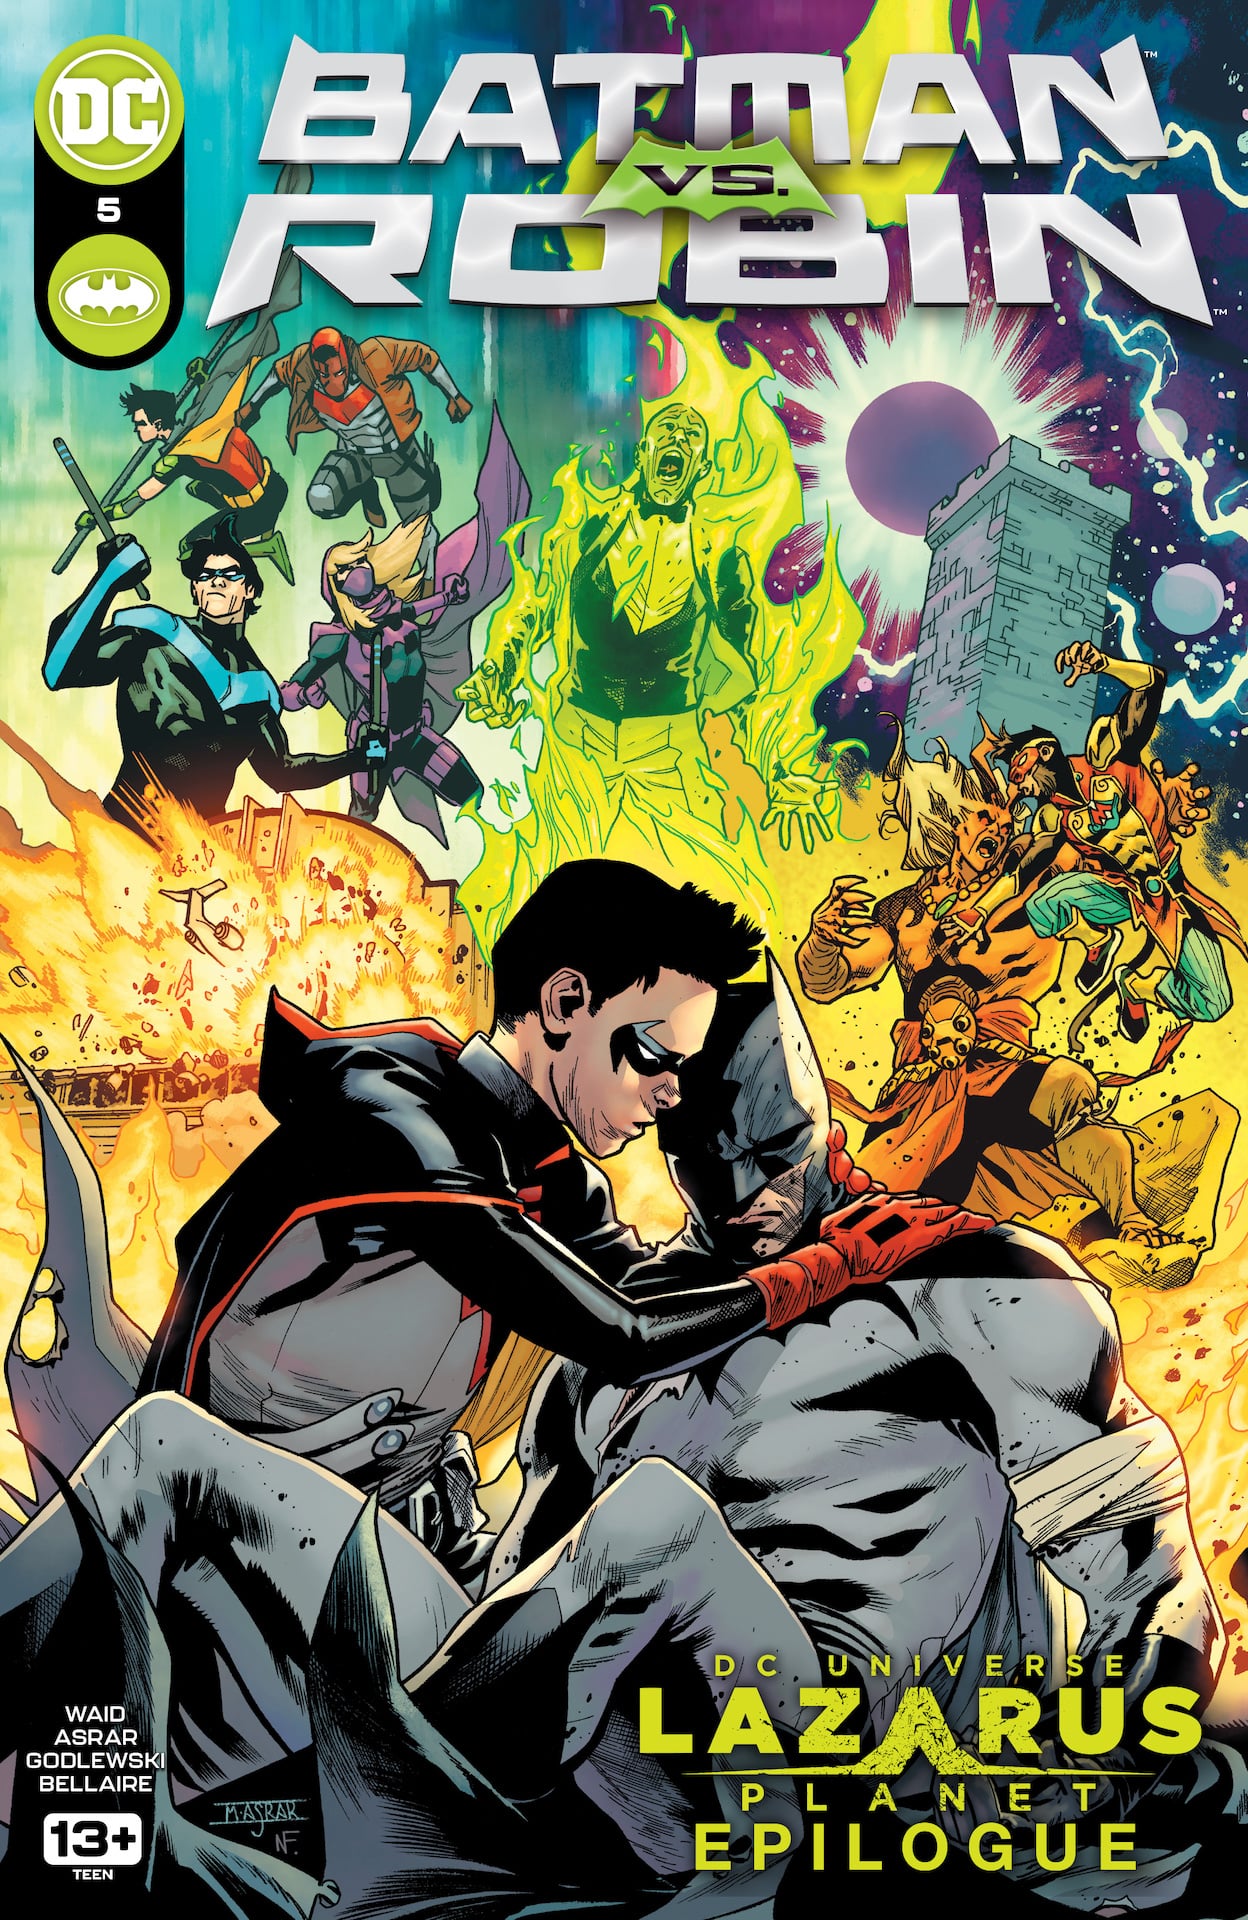 DC Preview: Batman vs. Robin #5